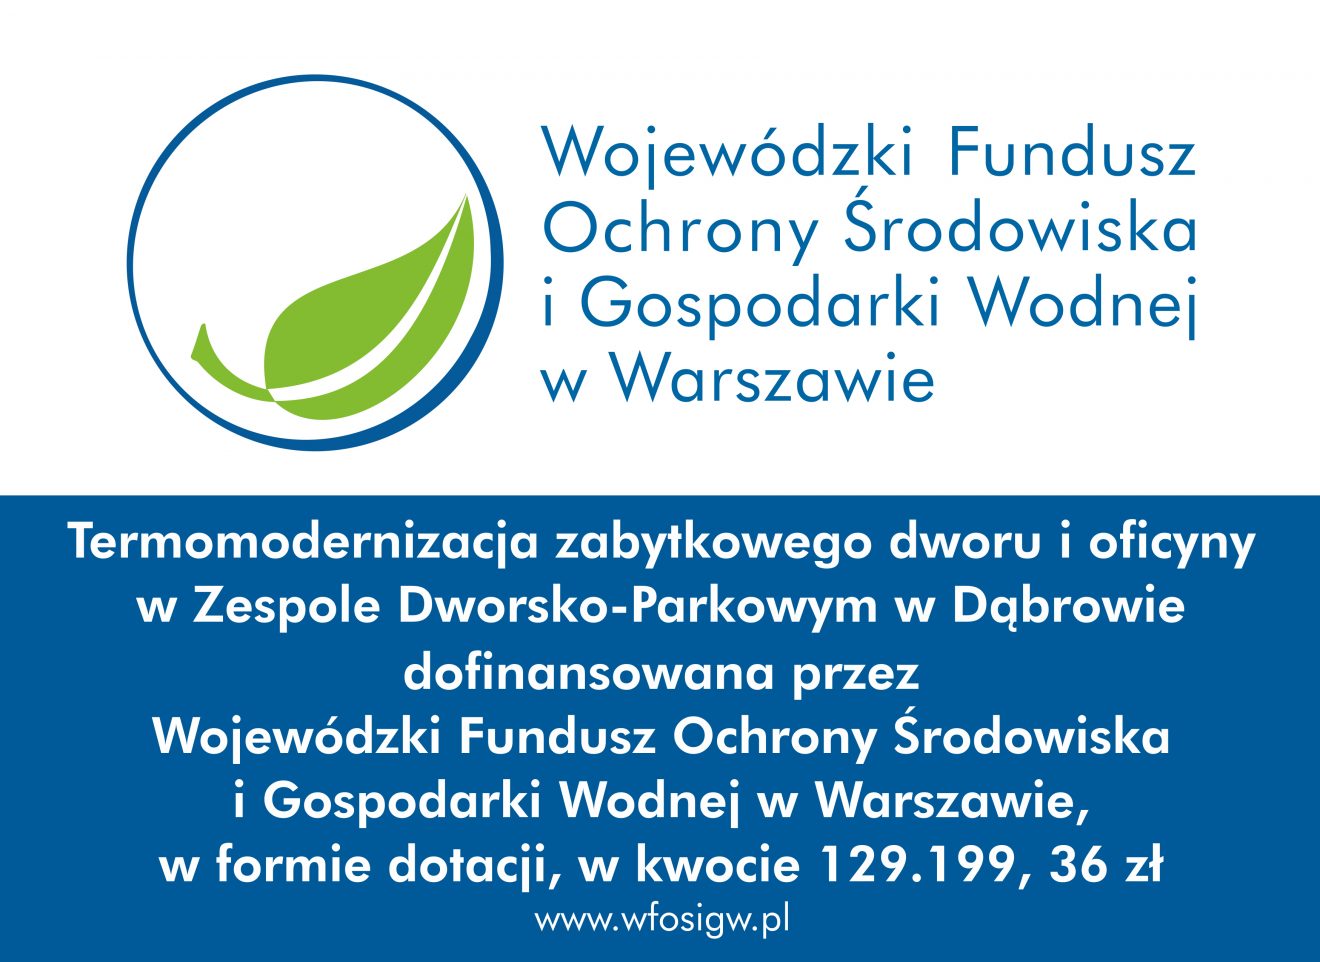 Tabliczka informacja o zrealizowaniu zadania z logotypem Wojewódzkiego Funduszu Ochrony Środowiska i Gospodarki Wodnej w Warszawie